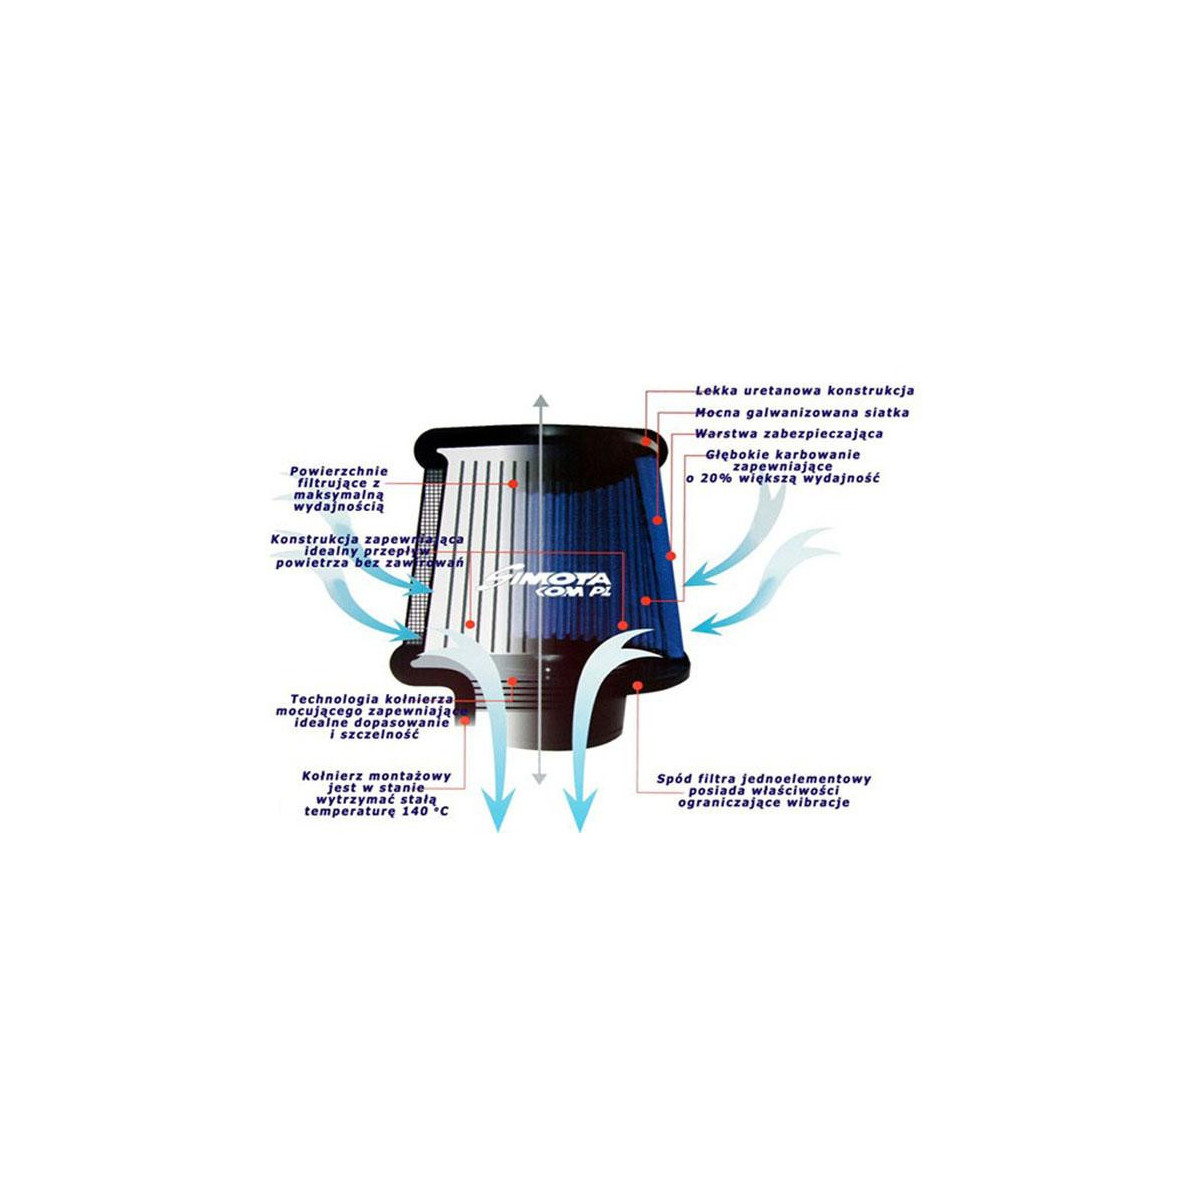 Filtr stożkowy SIMOTA JAU-X02203-05 80-89mm Blue